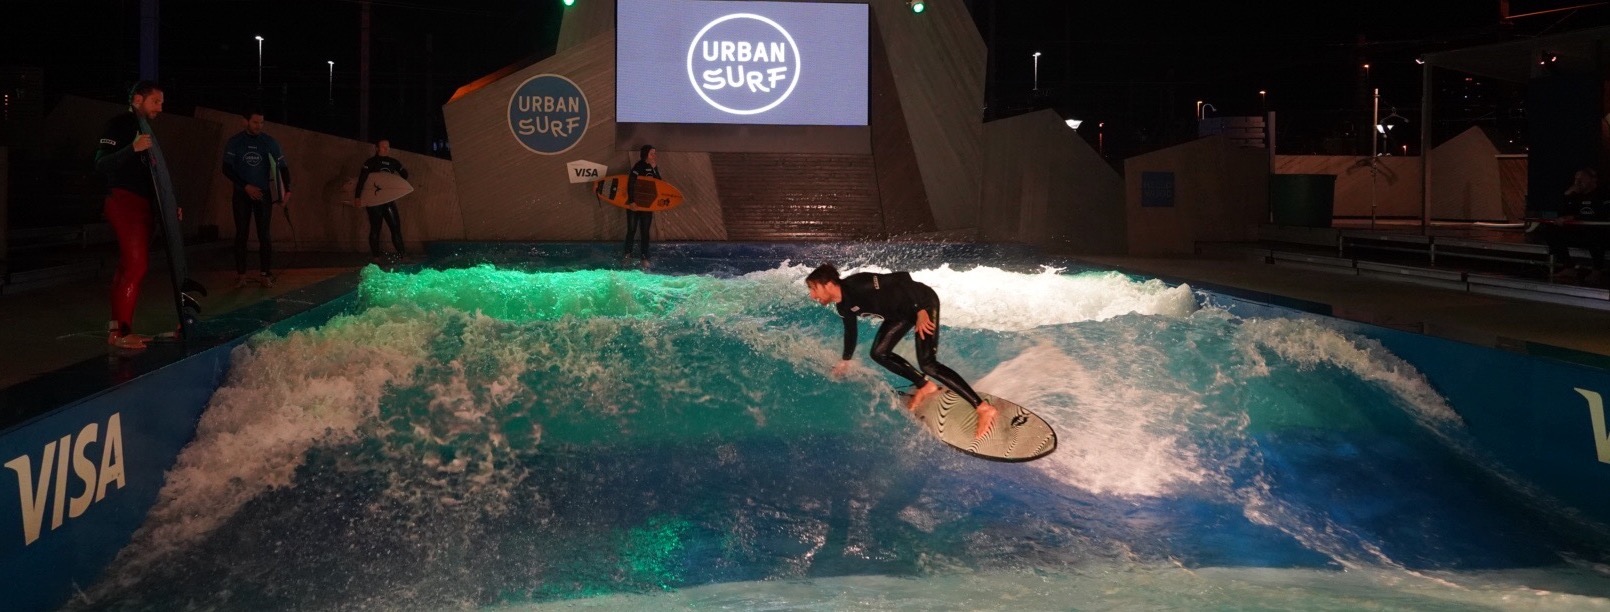 urbansurf zürich riversurfing schweiz surfen wellenreiten rapid inland surfing